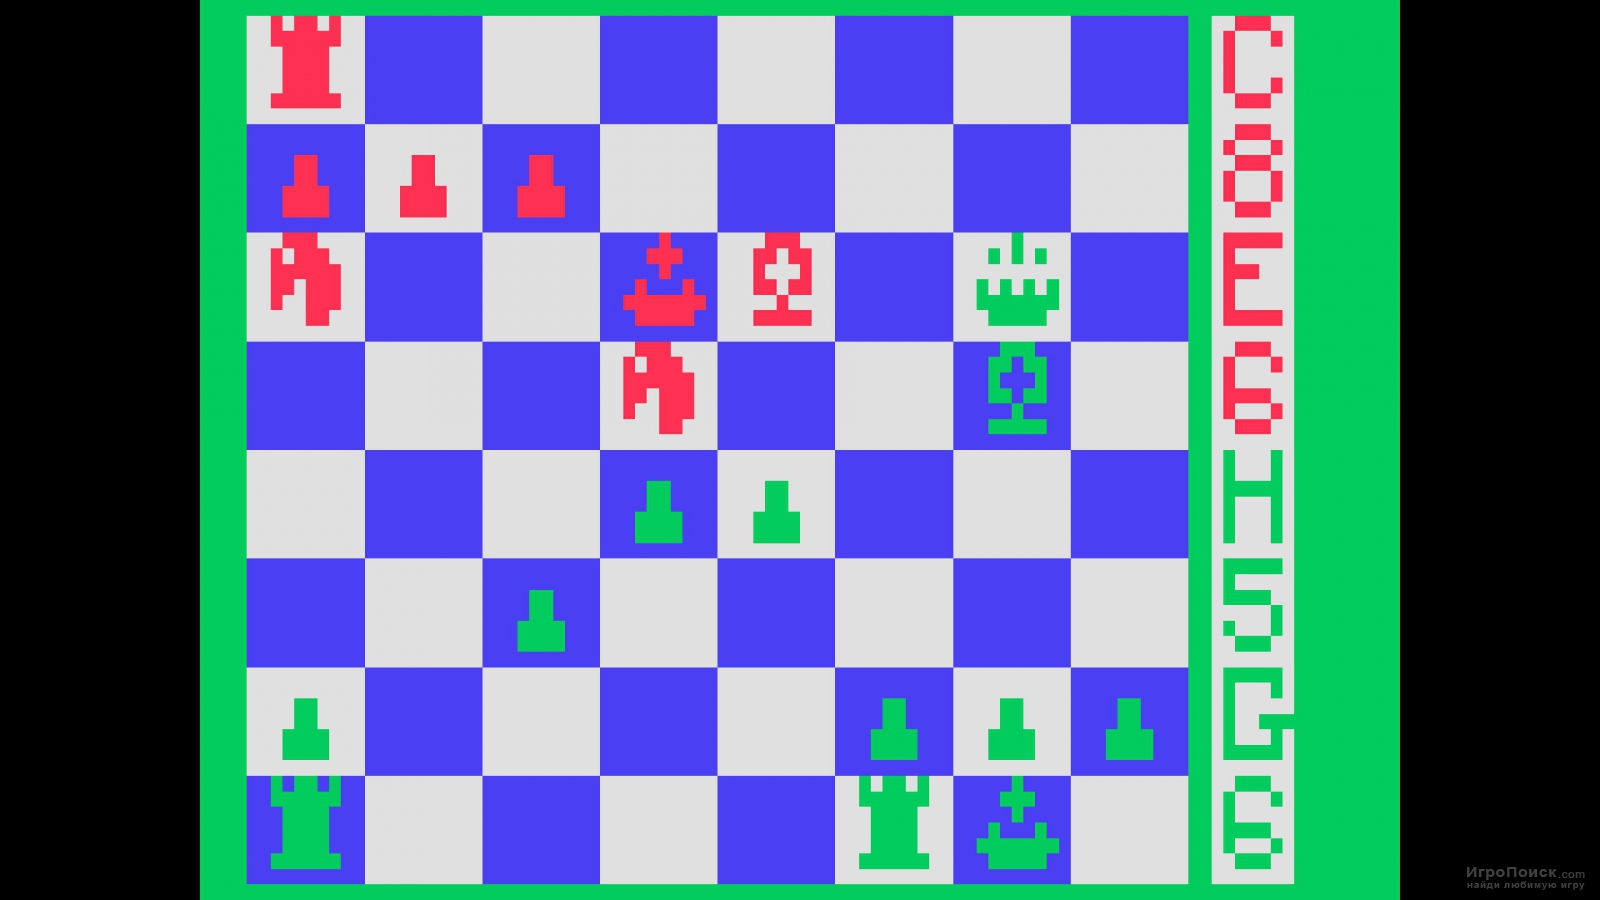    Schach